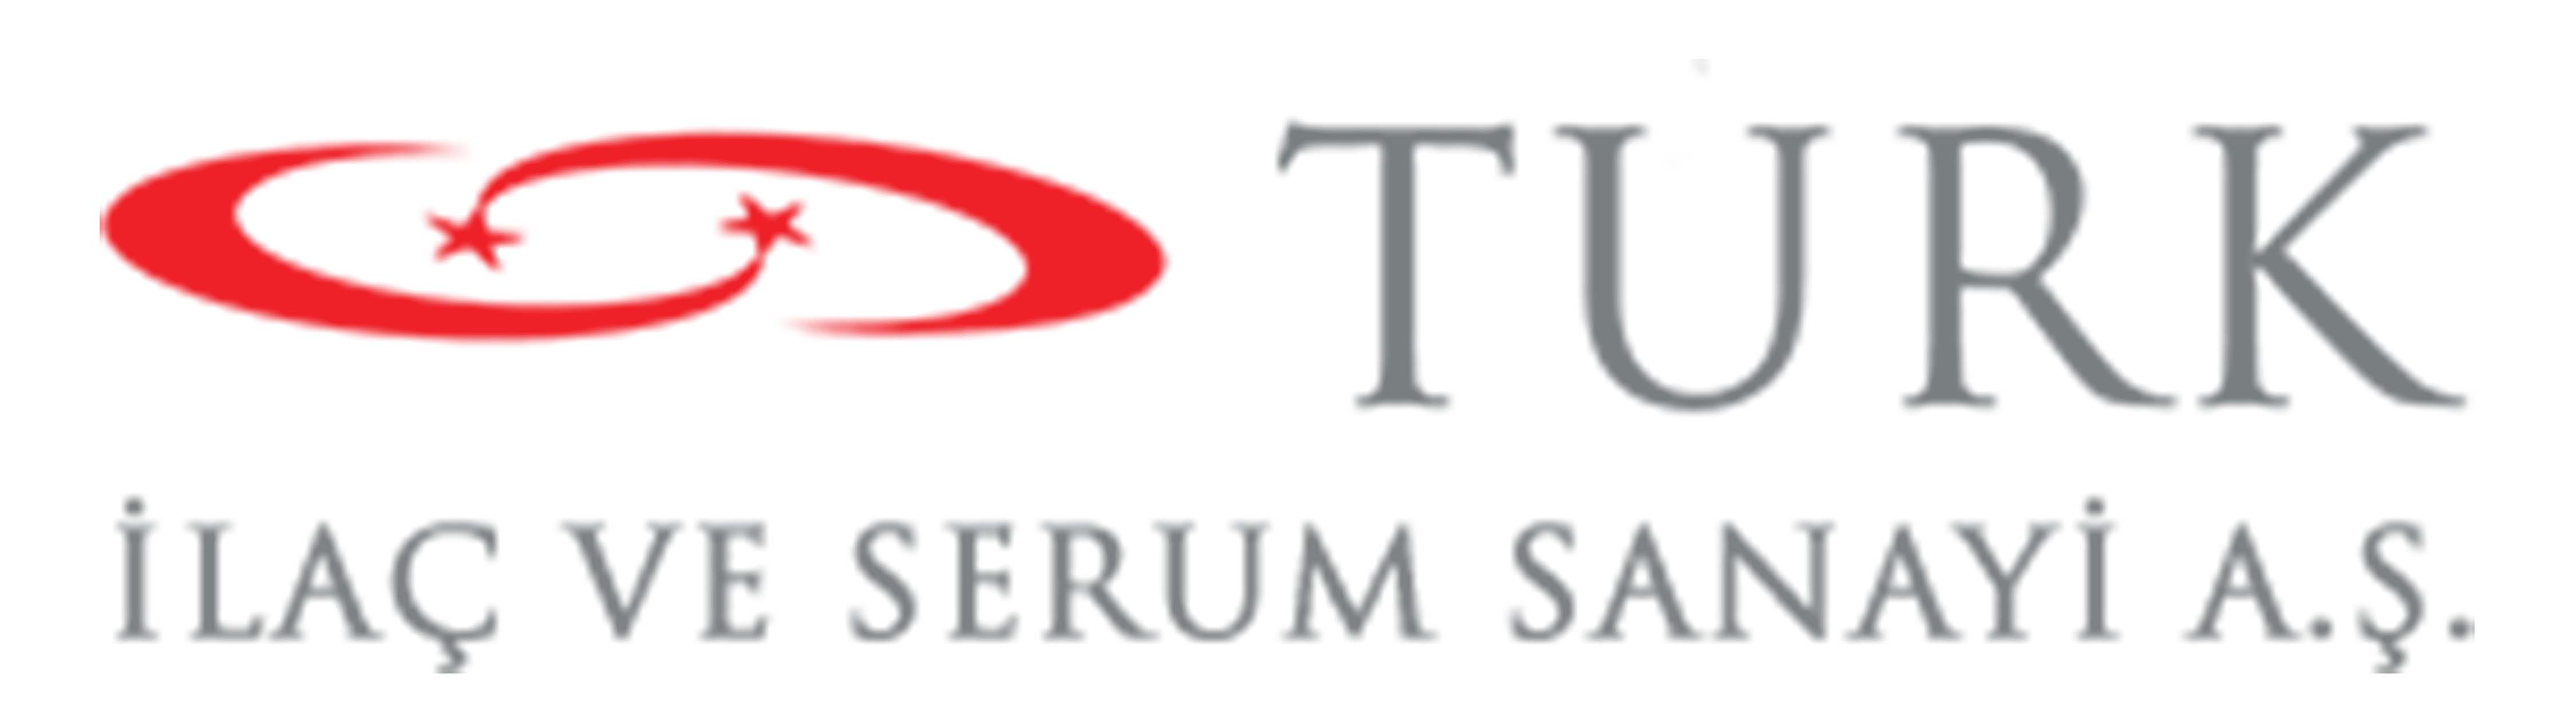 TRILC - Türk İlaç ve Serum Sanayi